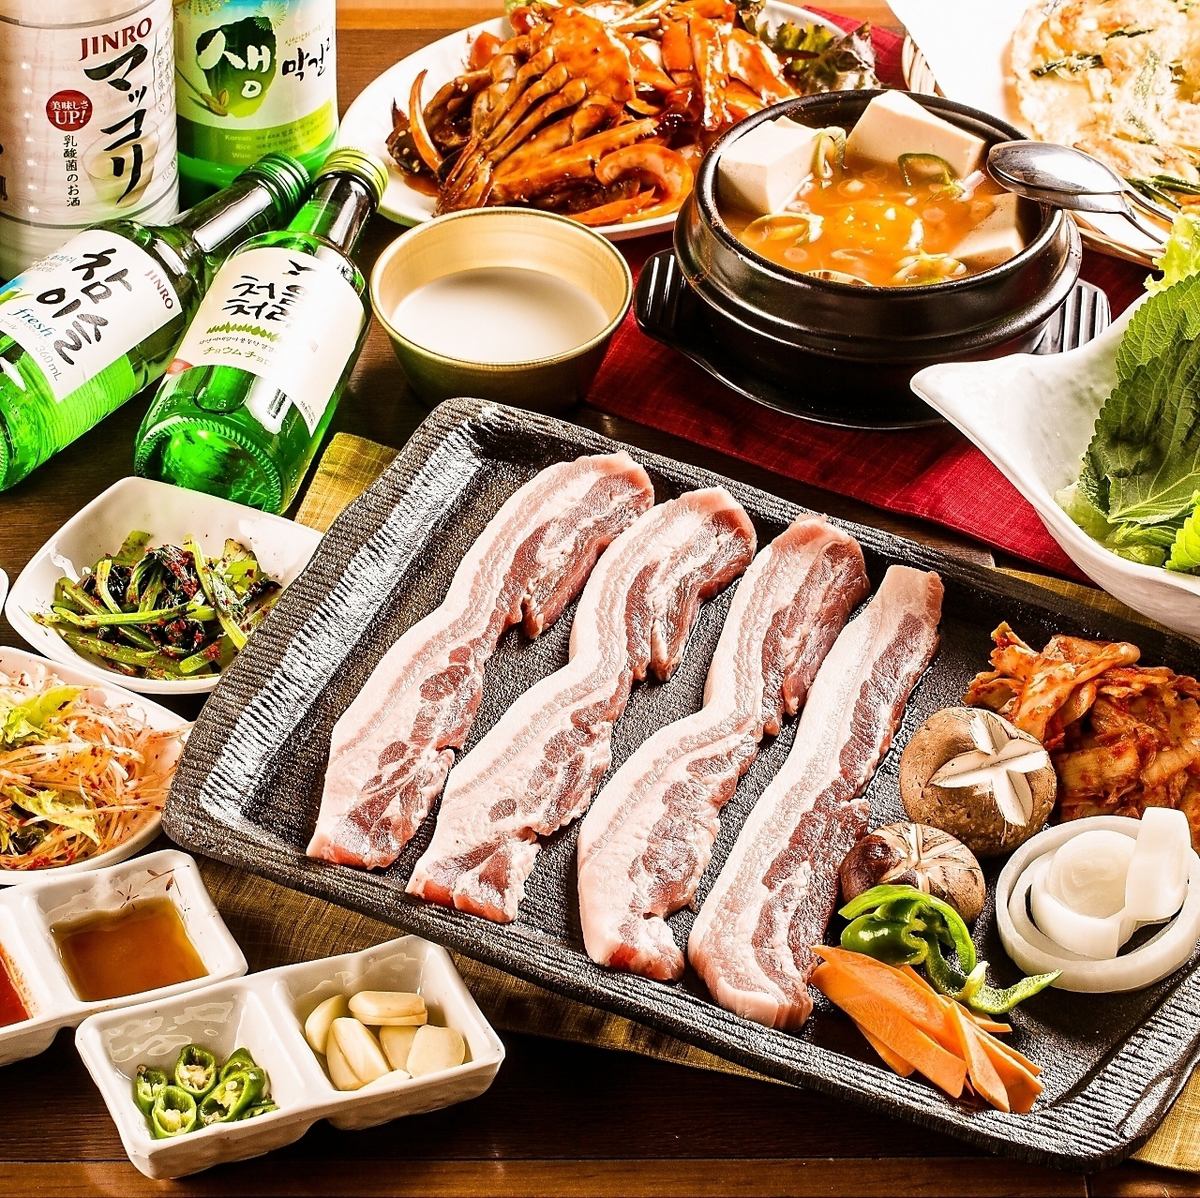 韓國人氣餐廳「Kin-chan超值套餐」【7道菜/3,800日圓】★